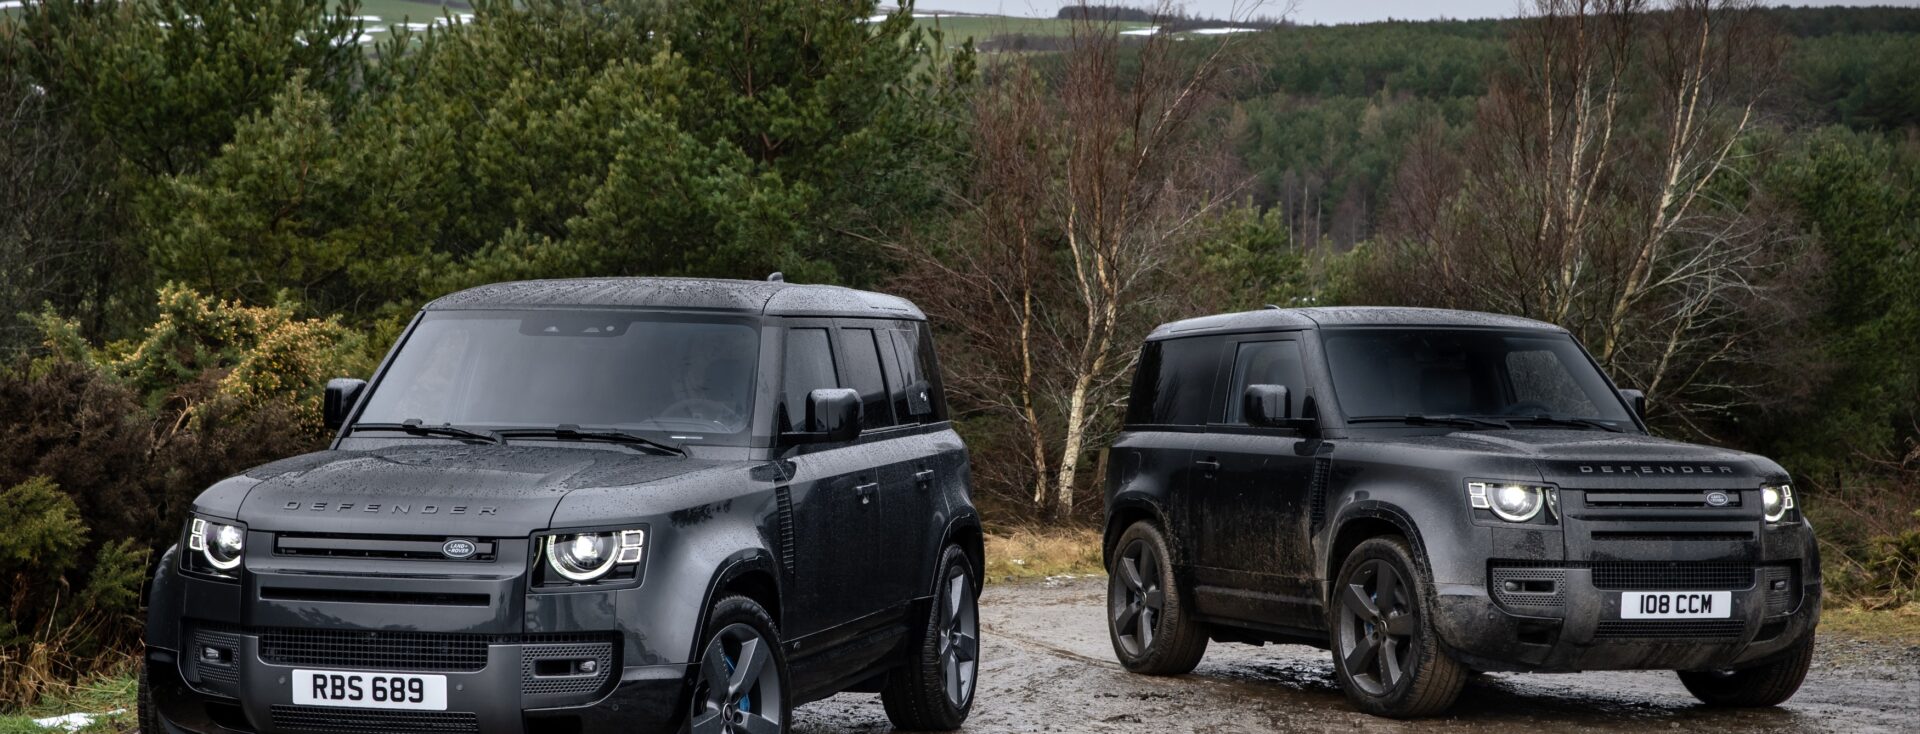 Der neue Land Rover Defender kommt mit neuer V8-Topmotorisierung – AutoFrey